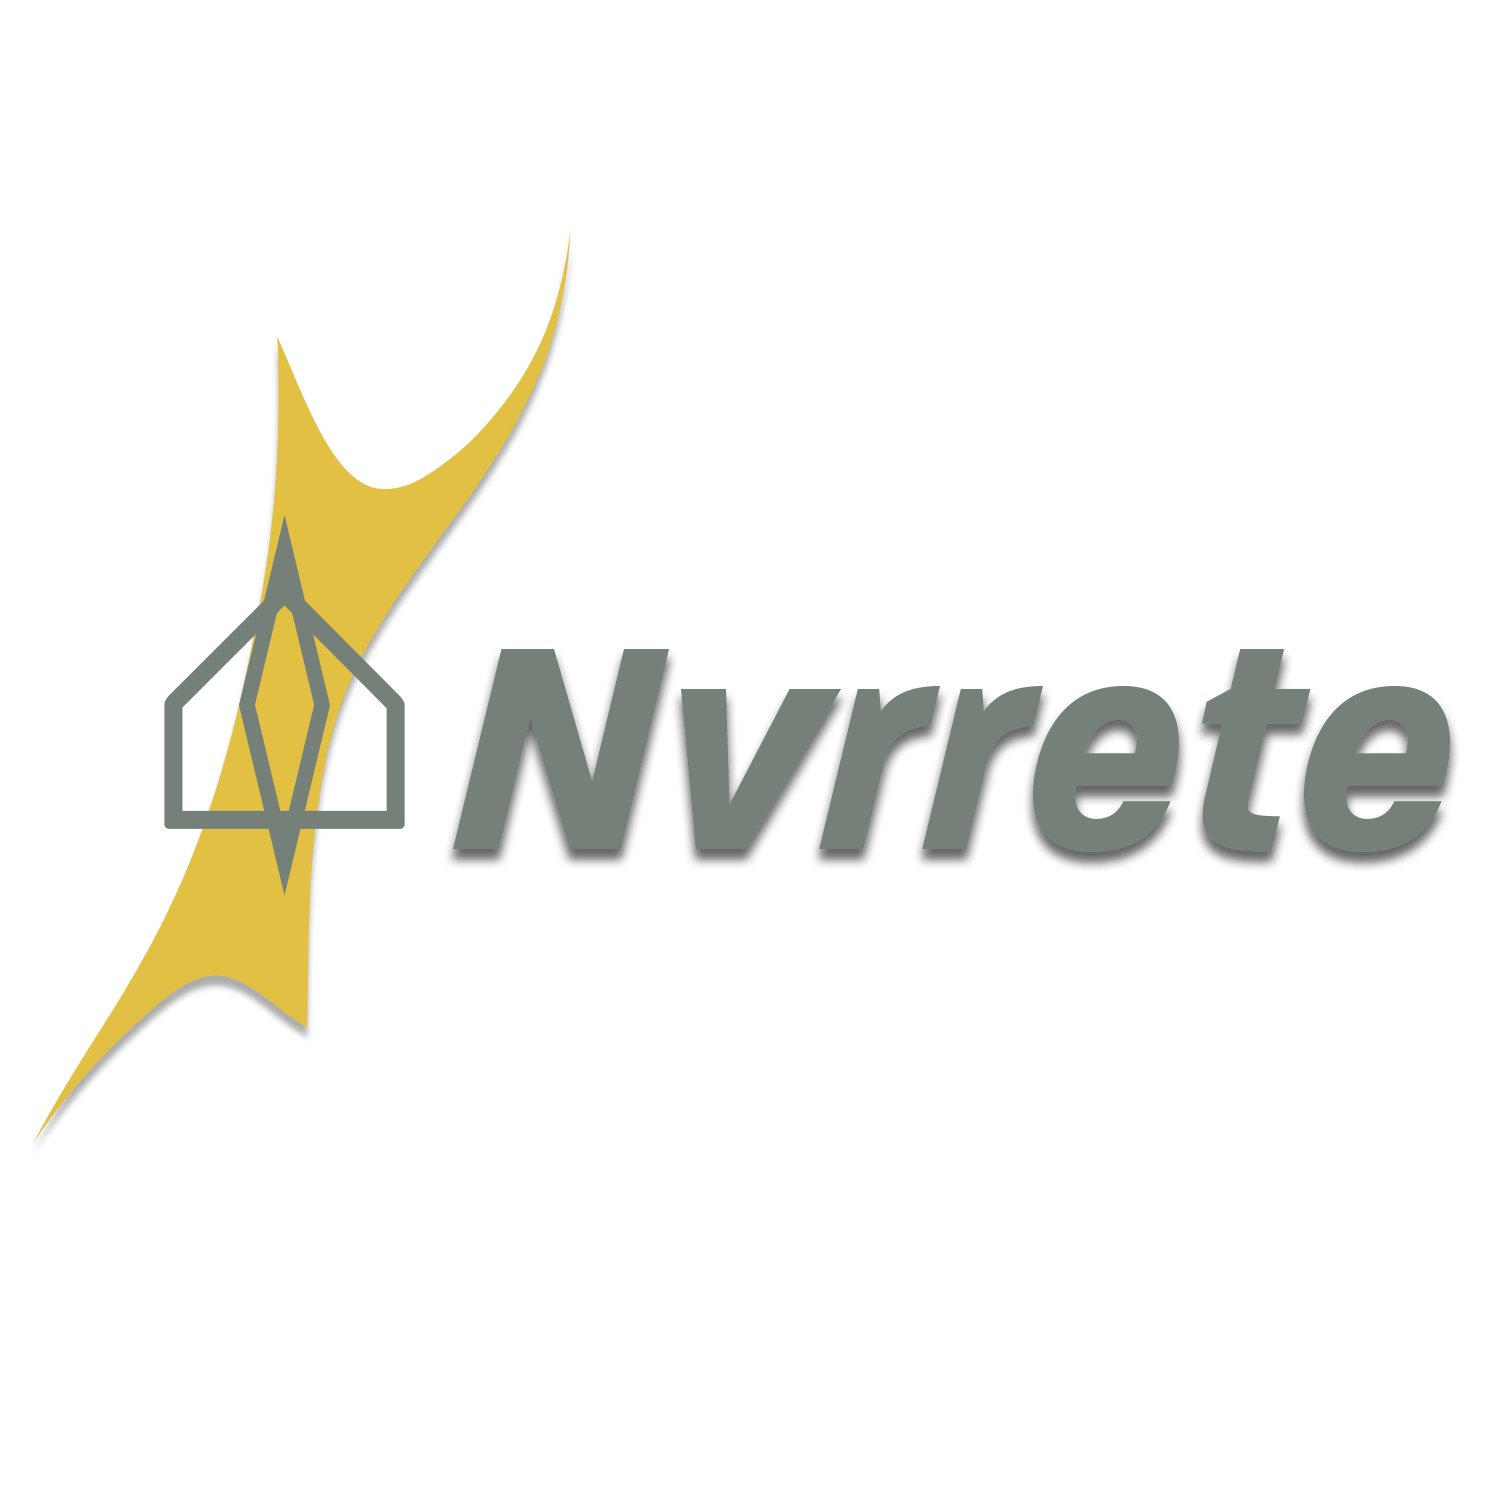 a logo for nvrrete with a yellow arrow nvrrete logo